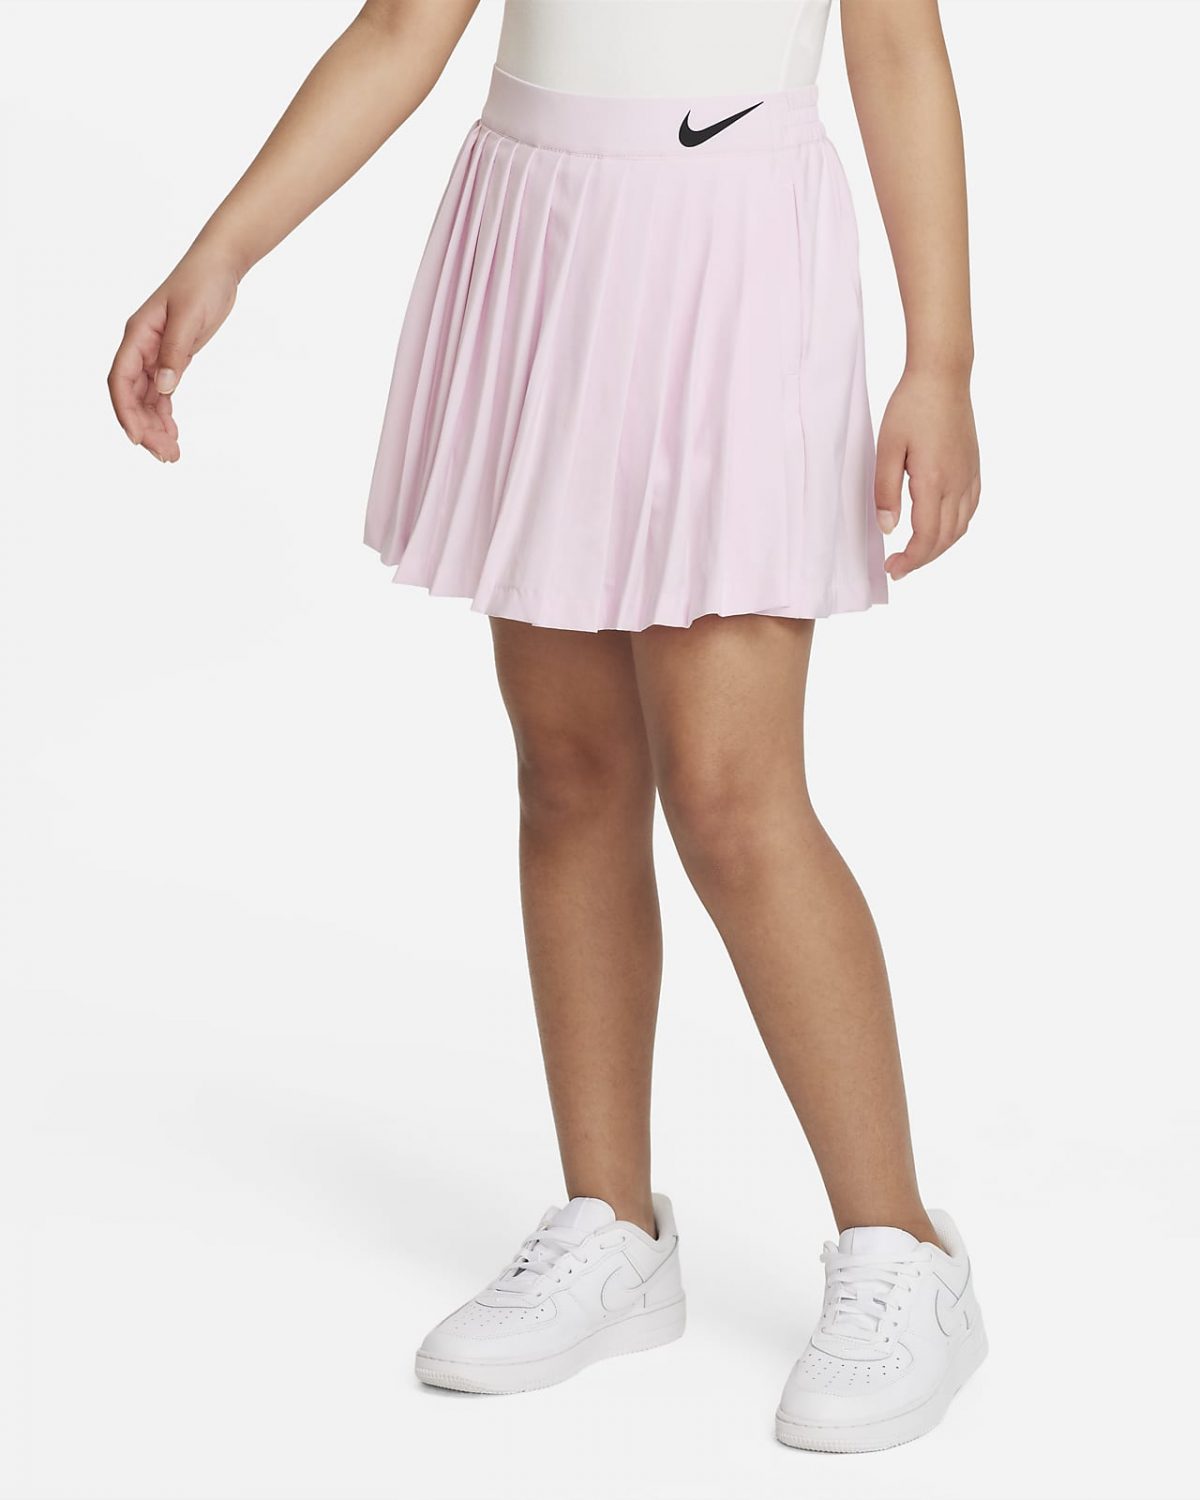 Детская юбка Nike Jelly фото